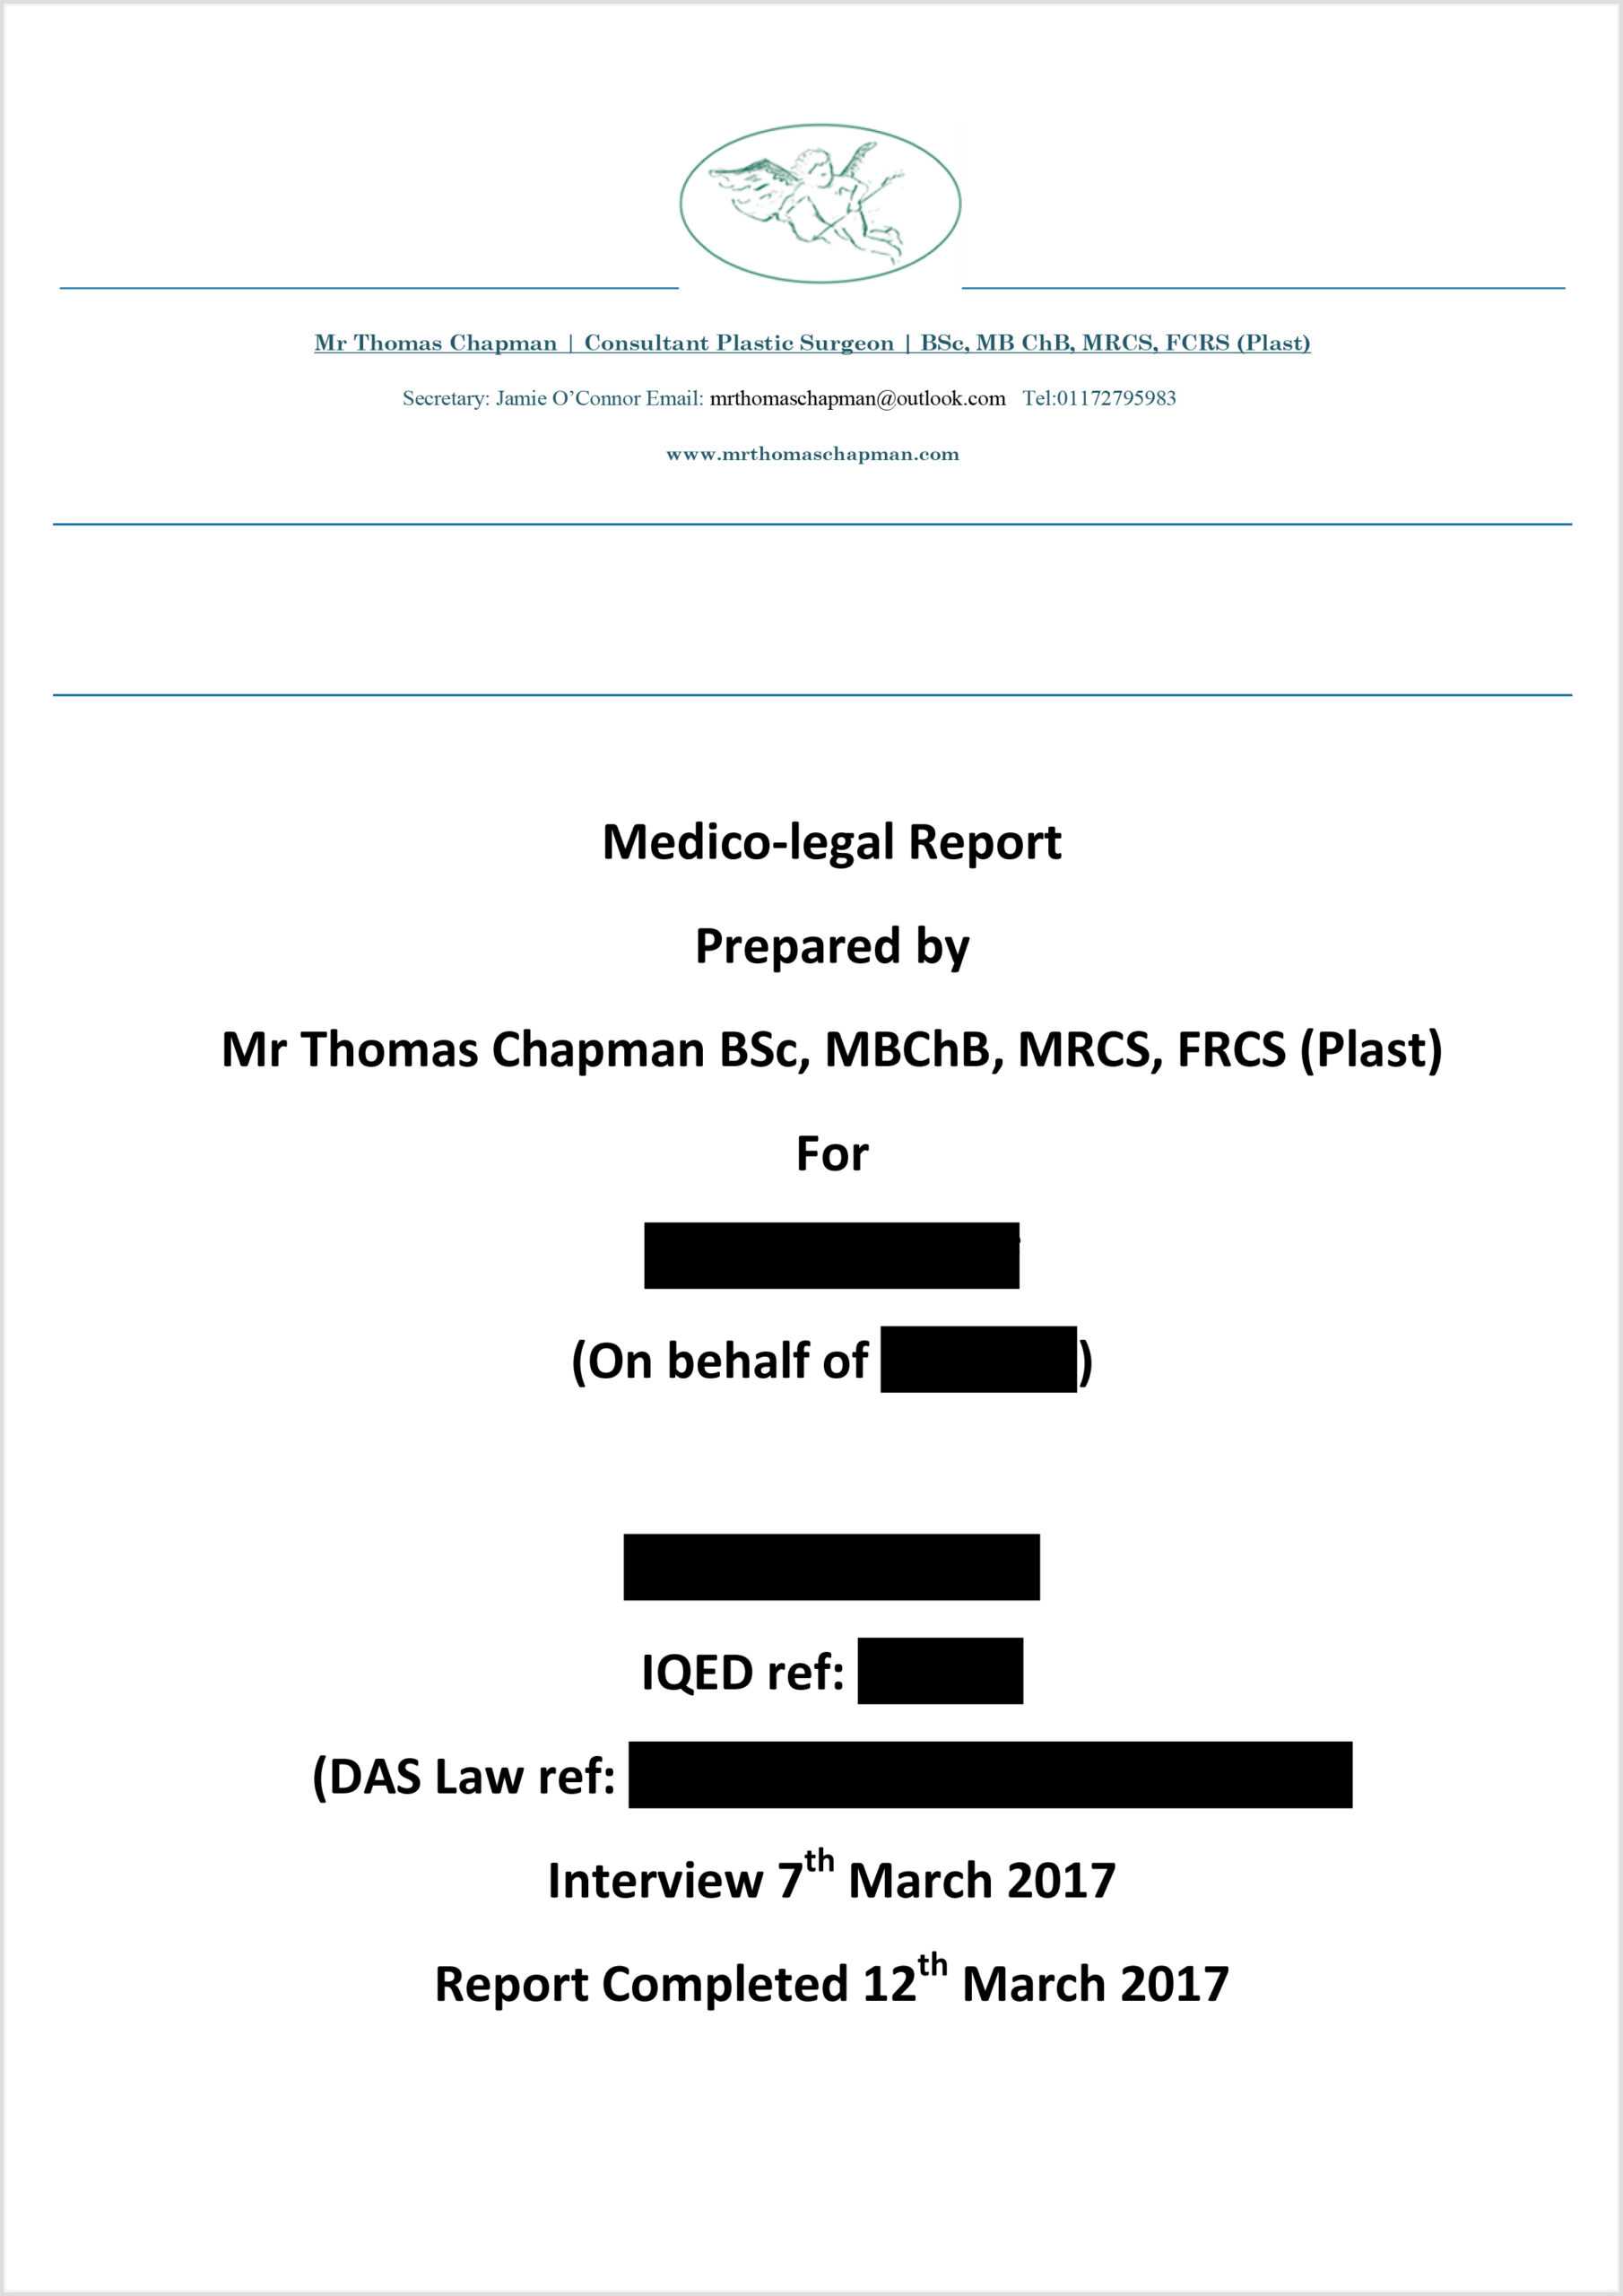 Medicolegal Reporting – Mr Thomas Chapman With Medical Legal Report Template